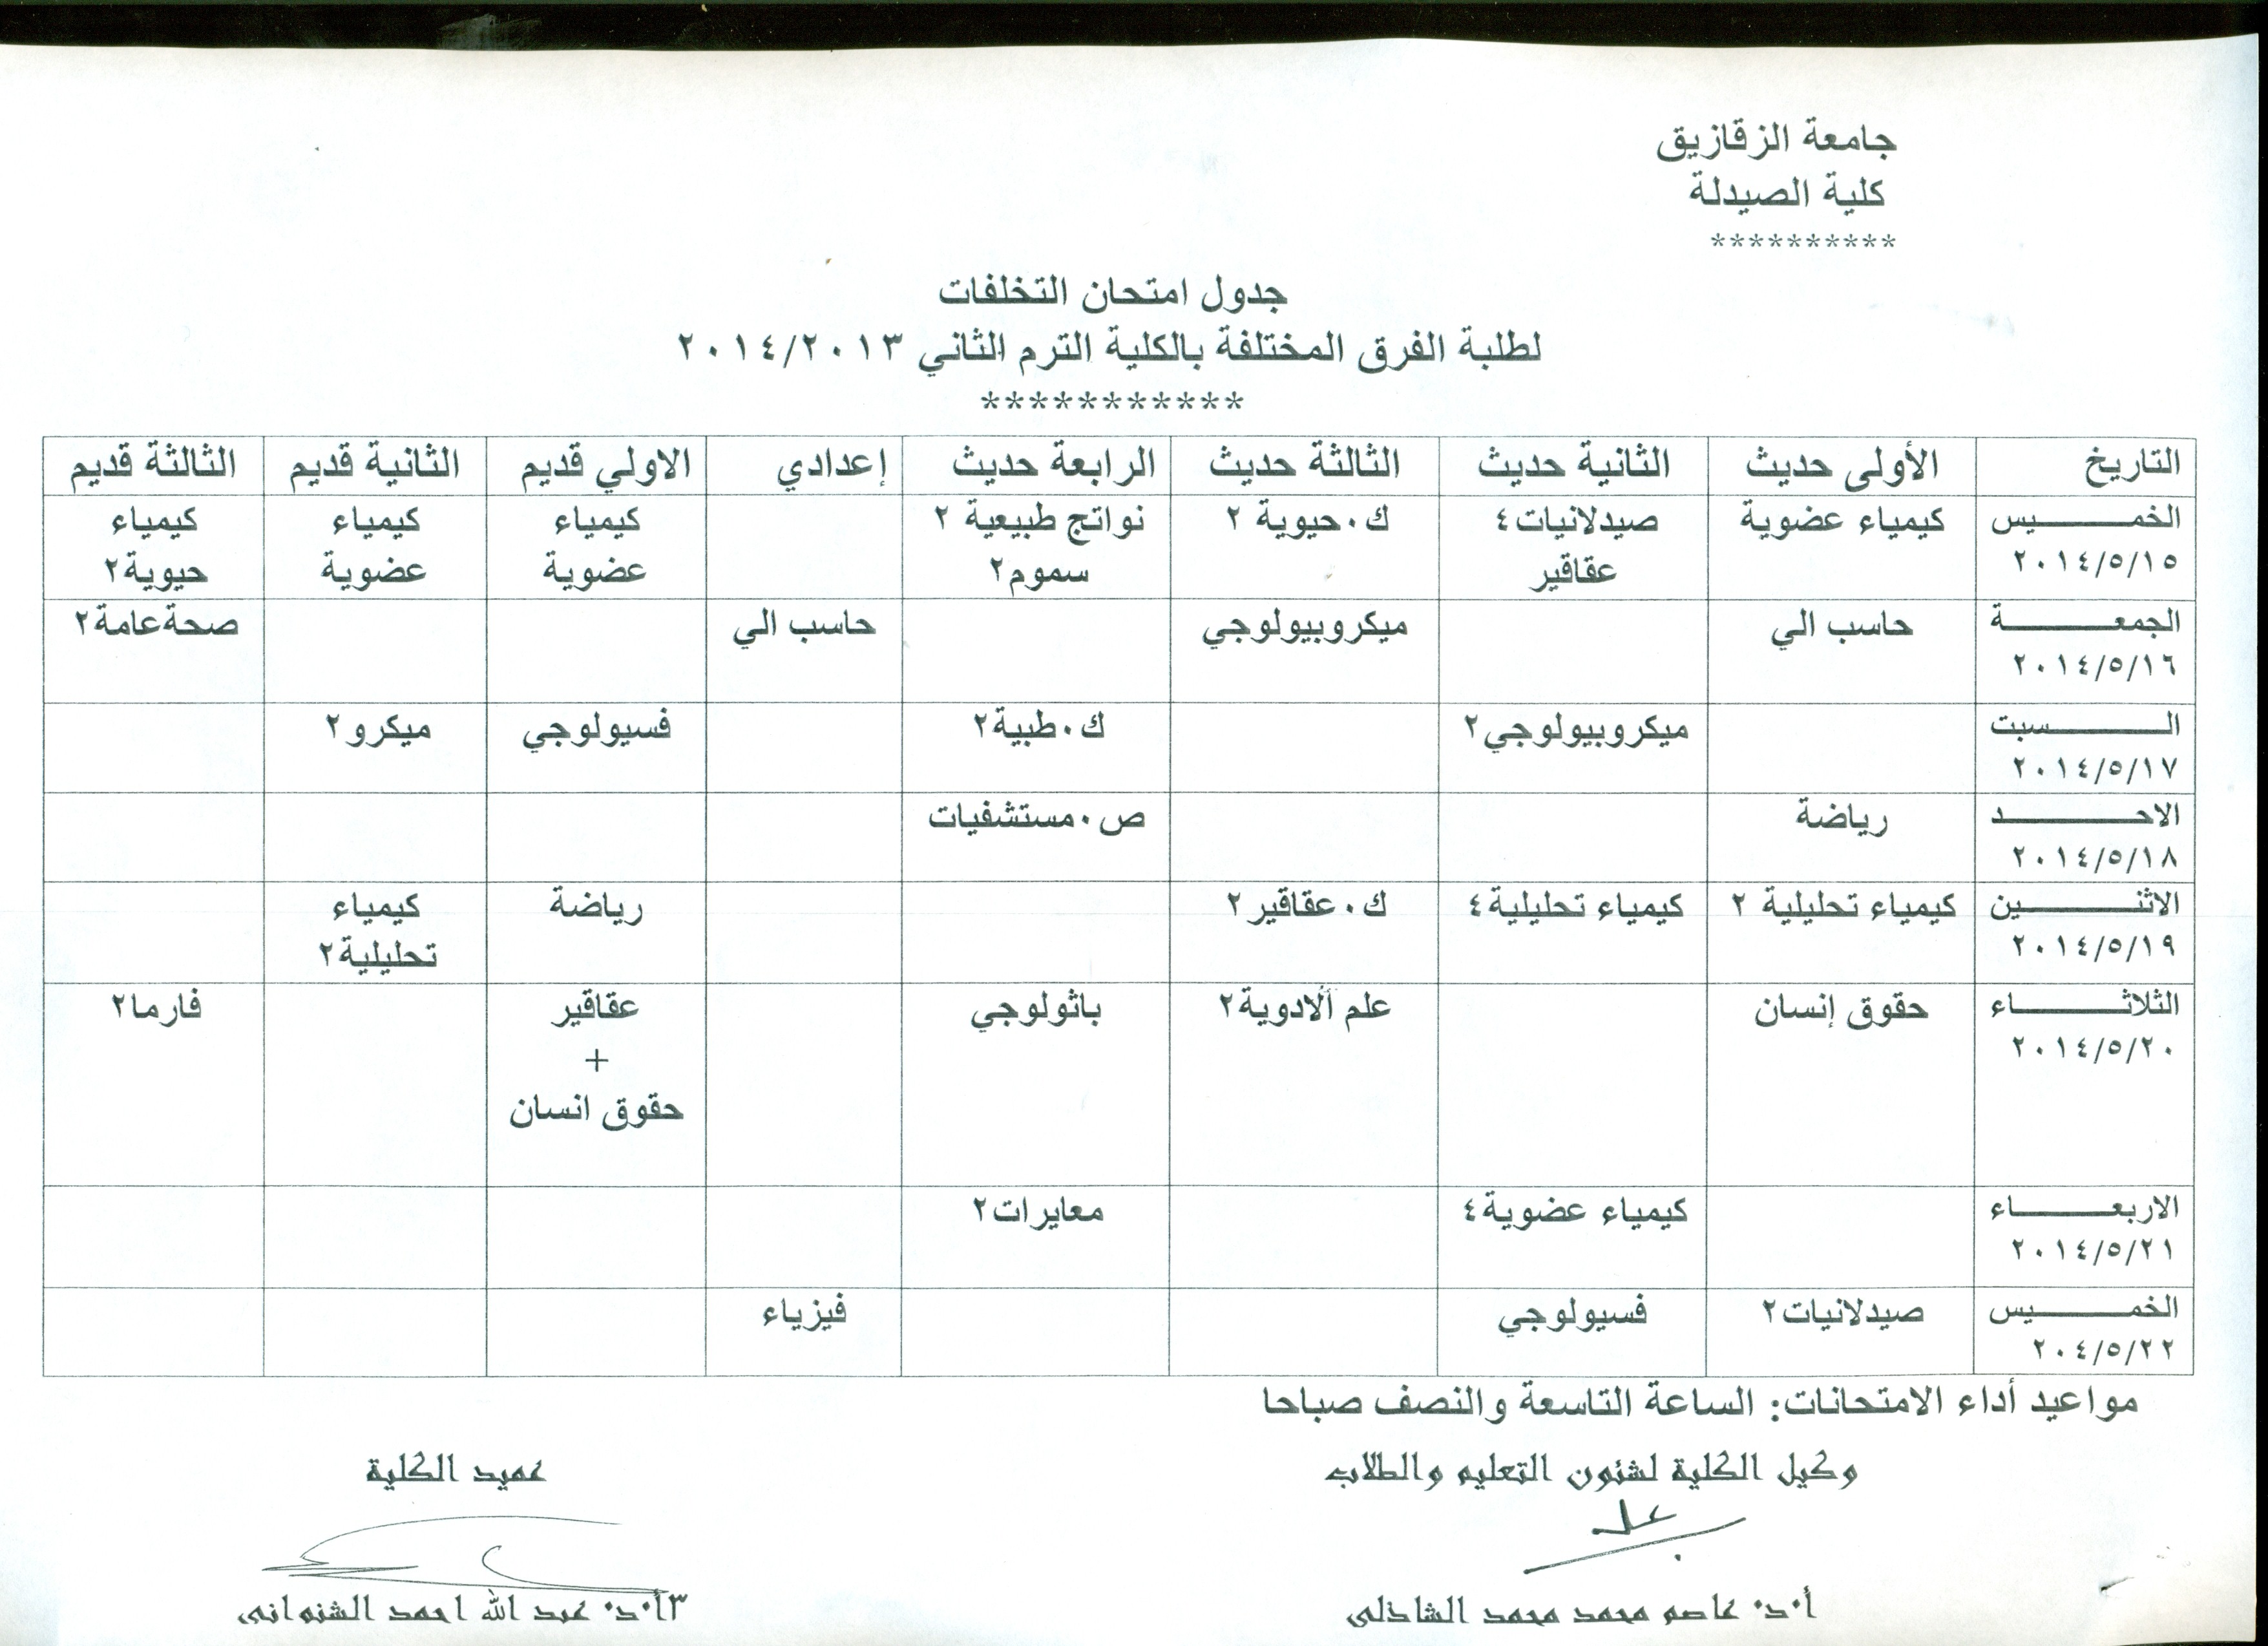 جدول إمتحان التخلفات لطلبة الفرق المختلفة للعام الجامعة 2013/2014